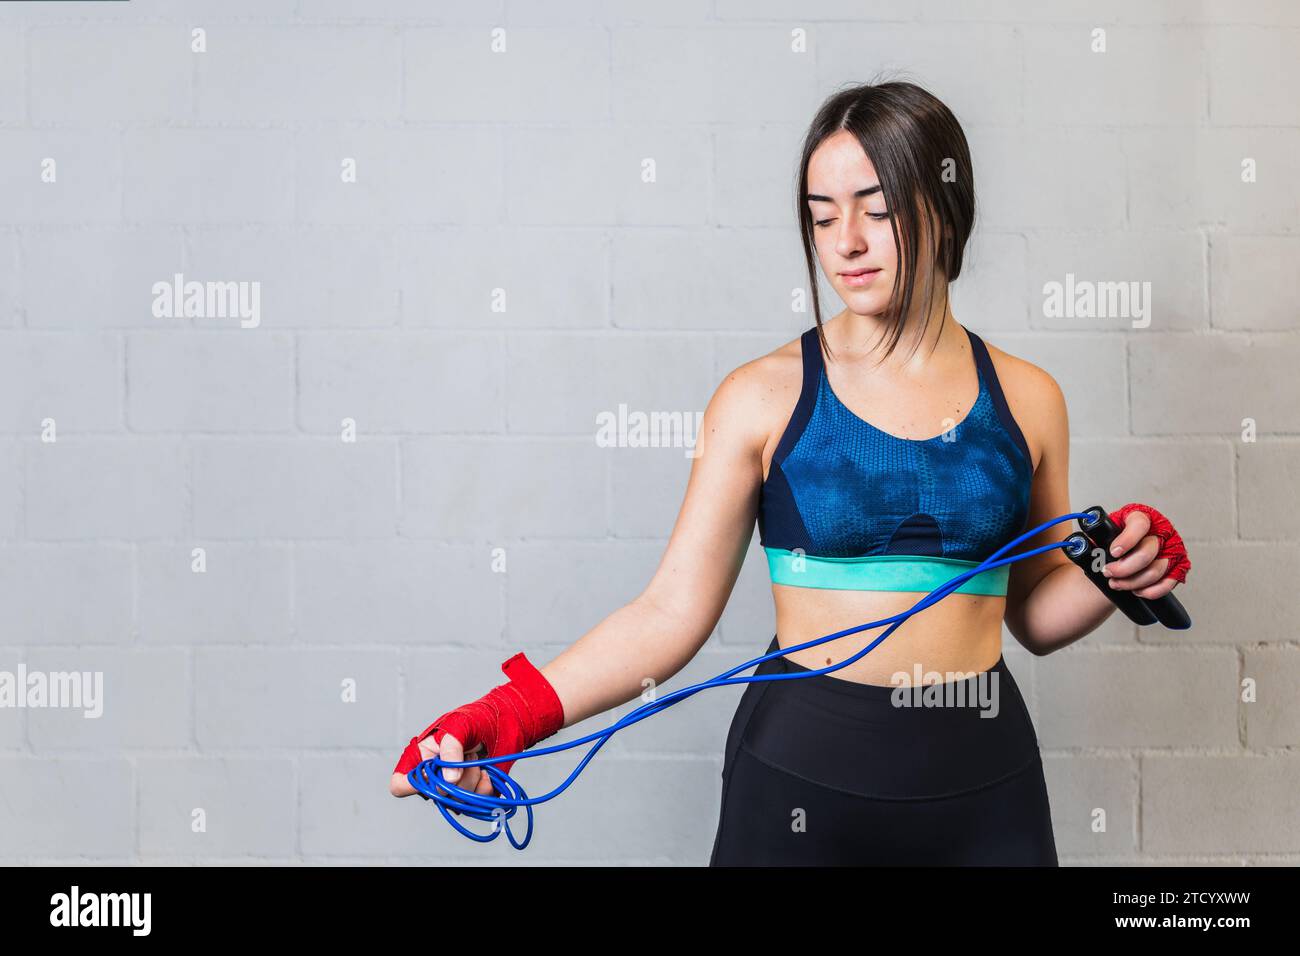 Photo horizontale adolescente caucasienne, vêtue de vêtements de sport, avec des bandages rouges sur les mains et une corde bleue. Entraînement dans une salle de boxe. Copier spa Banque D'Images